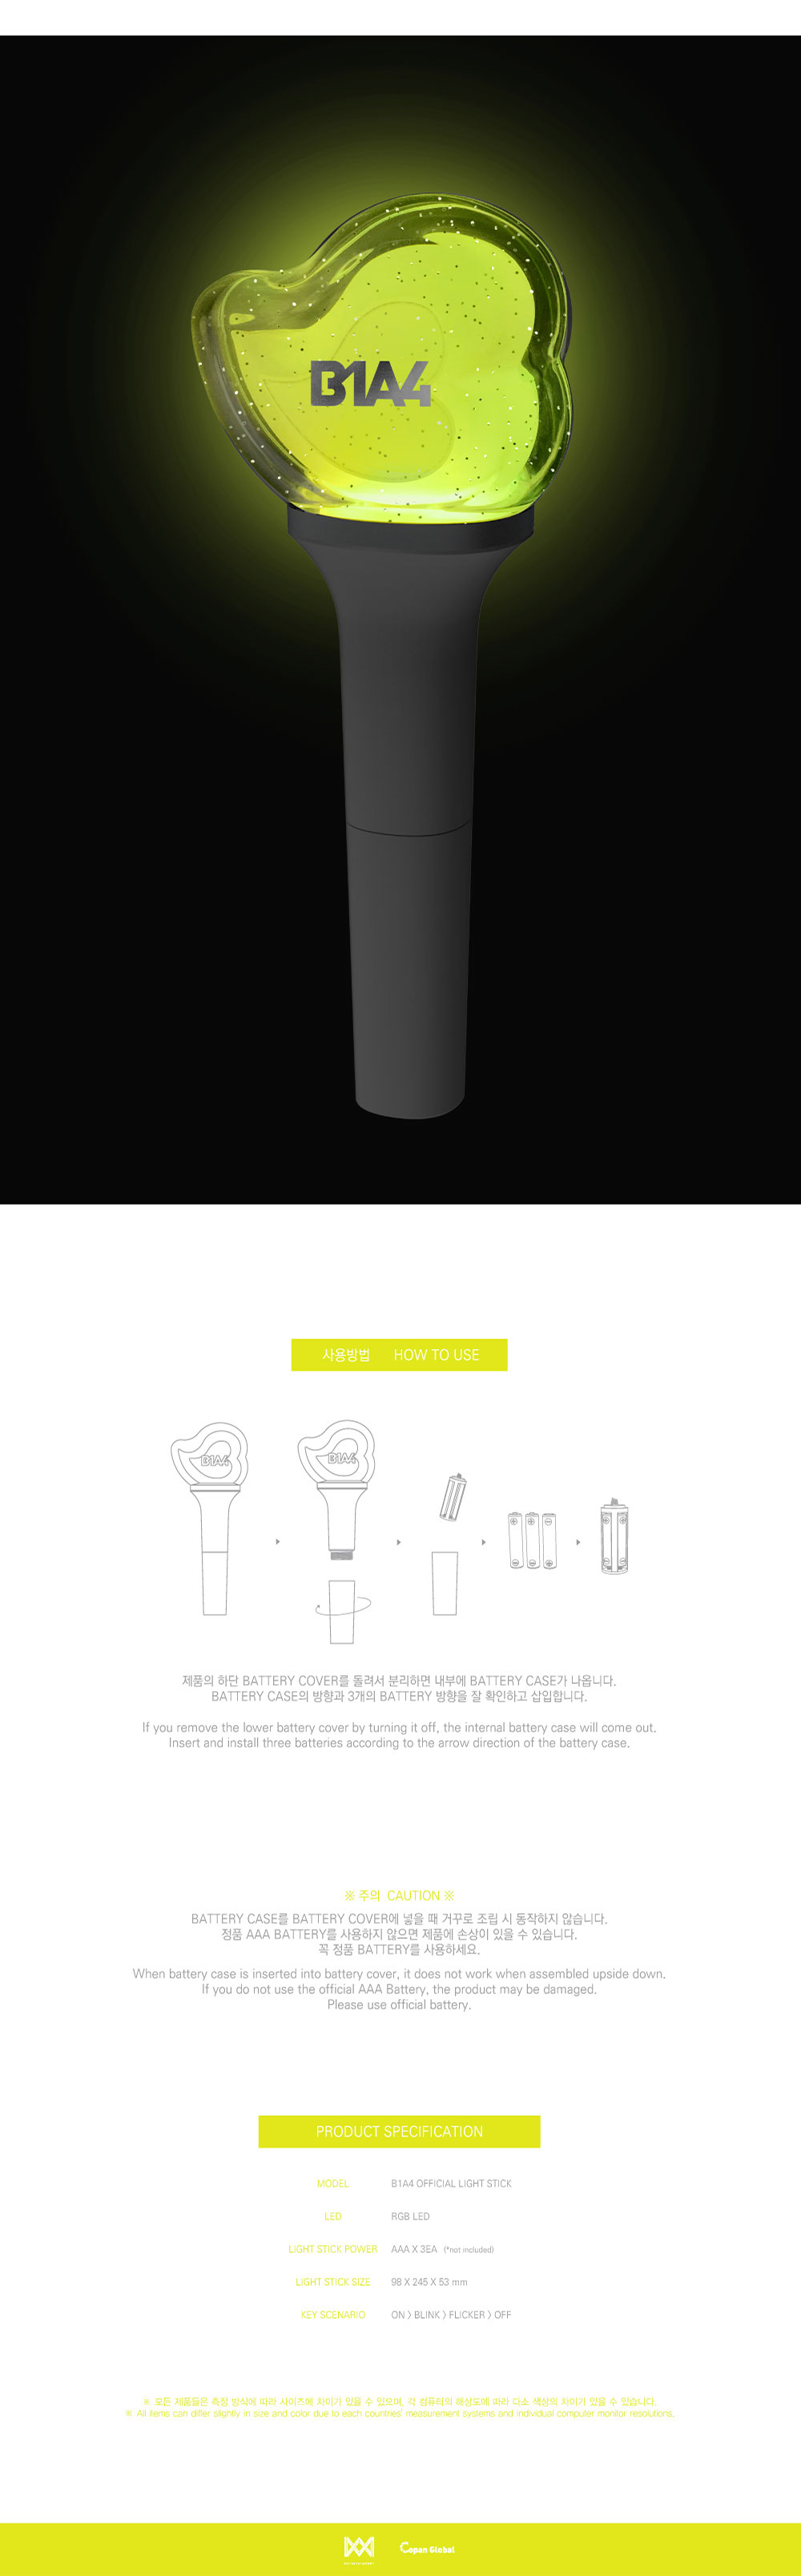 B1A4 Official Light Stick